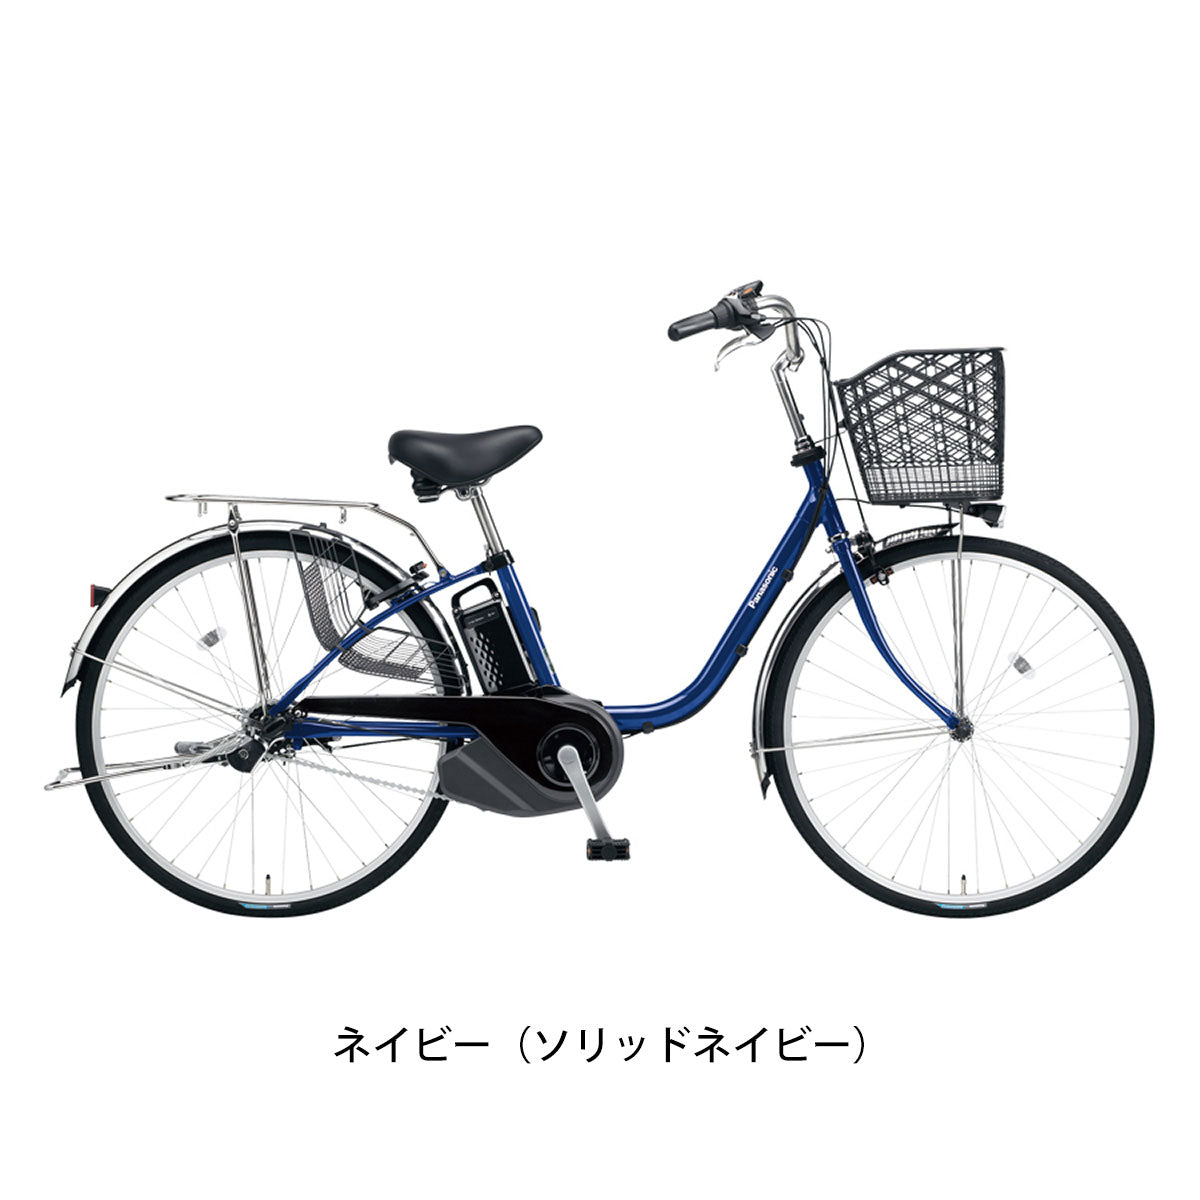 パナソニック 電動自転車 アシスト自転車 Panasonic 3段変速  BE-FS631